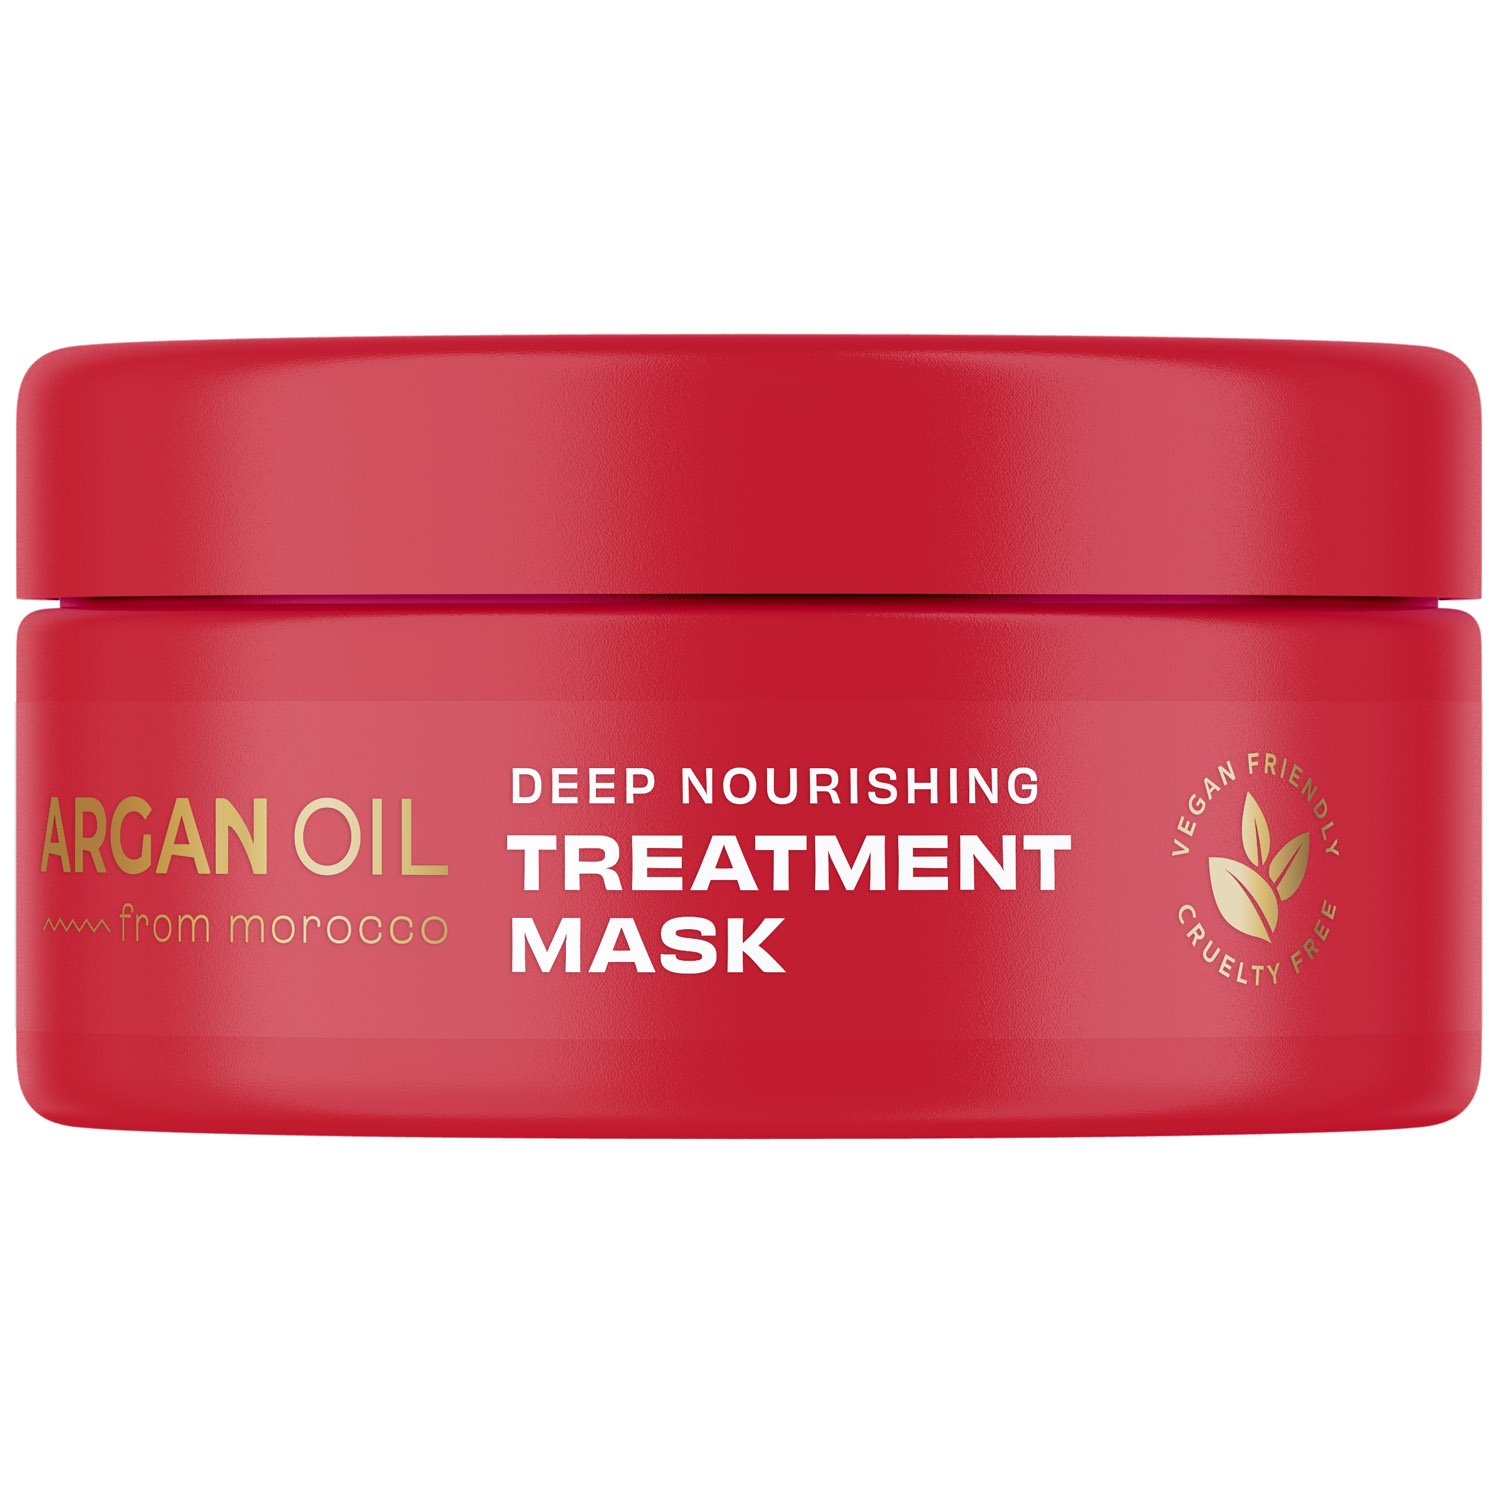 Маска для волосся Lee Stafford Argan Oil від Morocco Deep Nourishing Treatment Mask 200 мл - фото 1